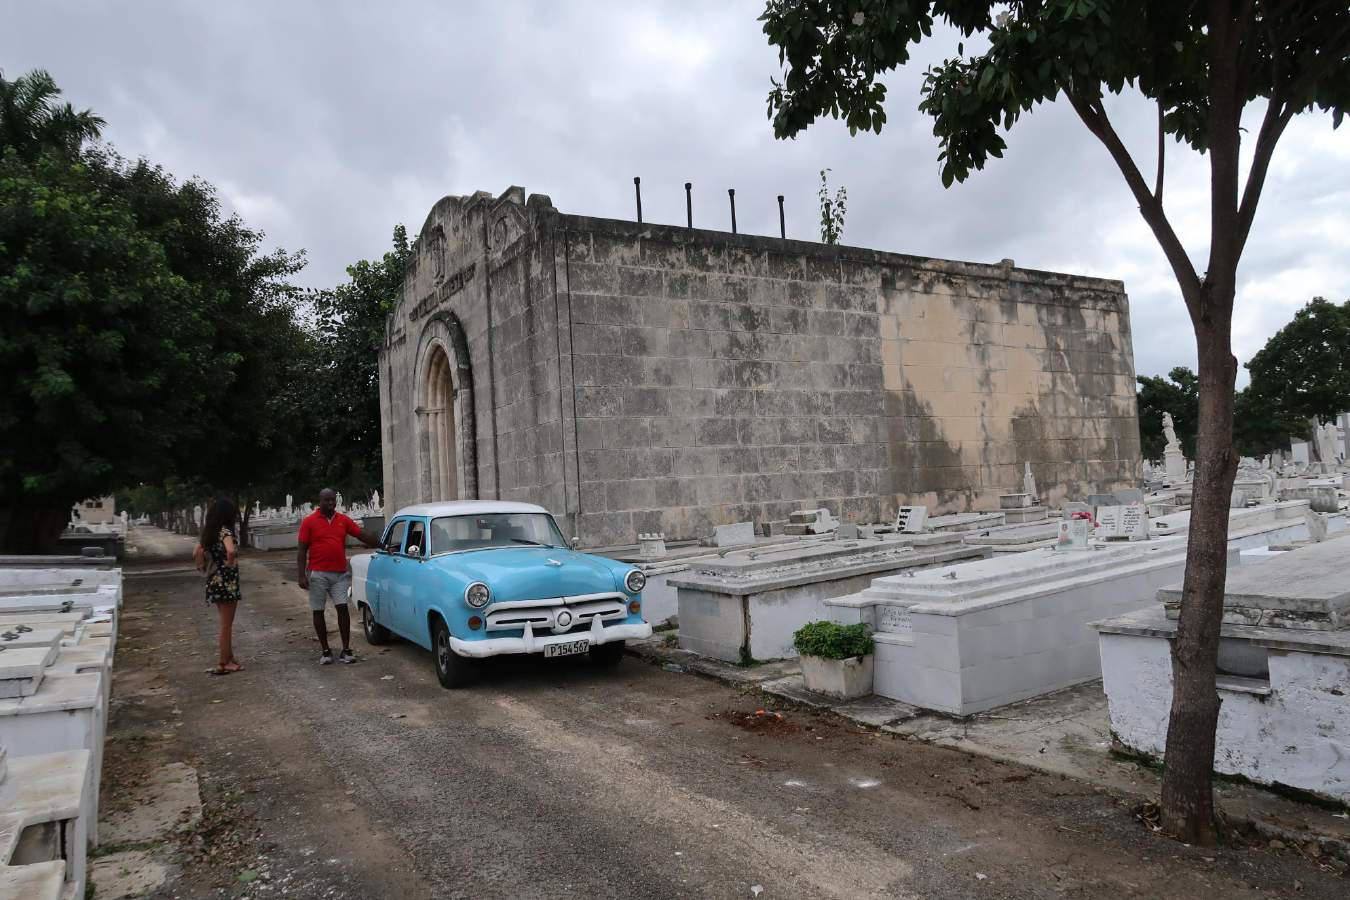 Fotos: Panteón de la Colonia Leonesa en Cuba